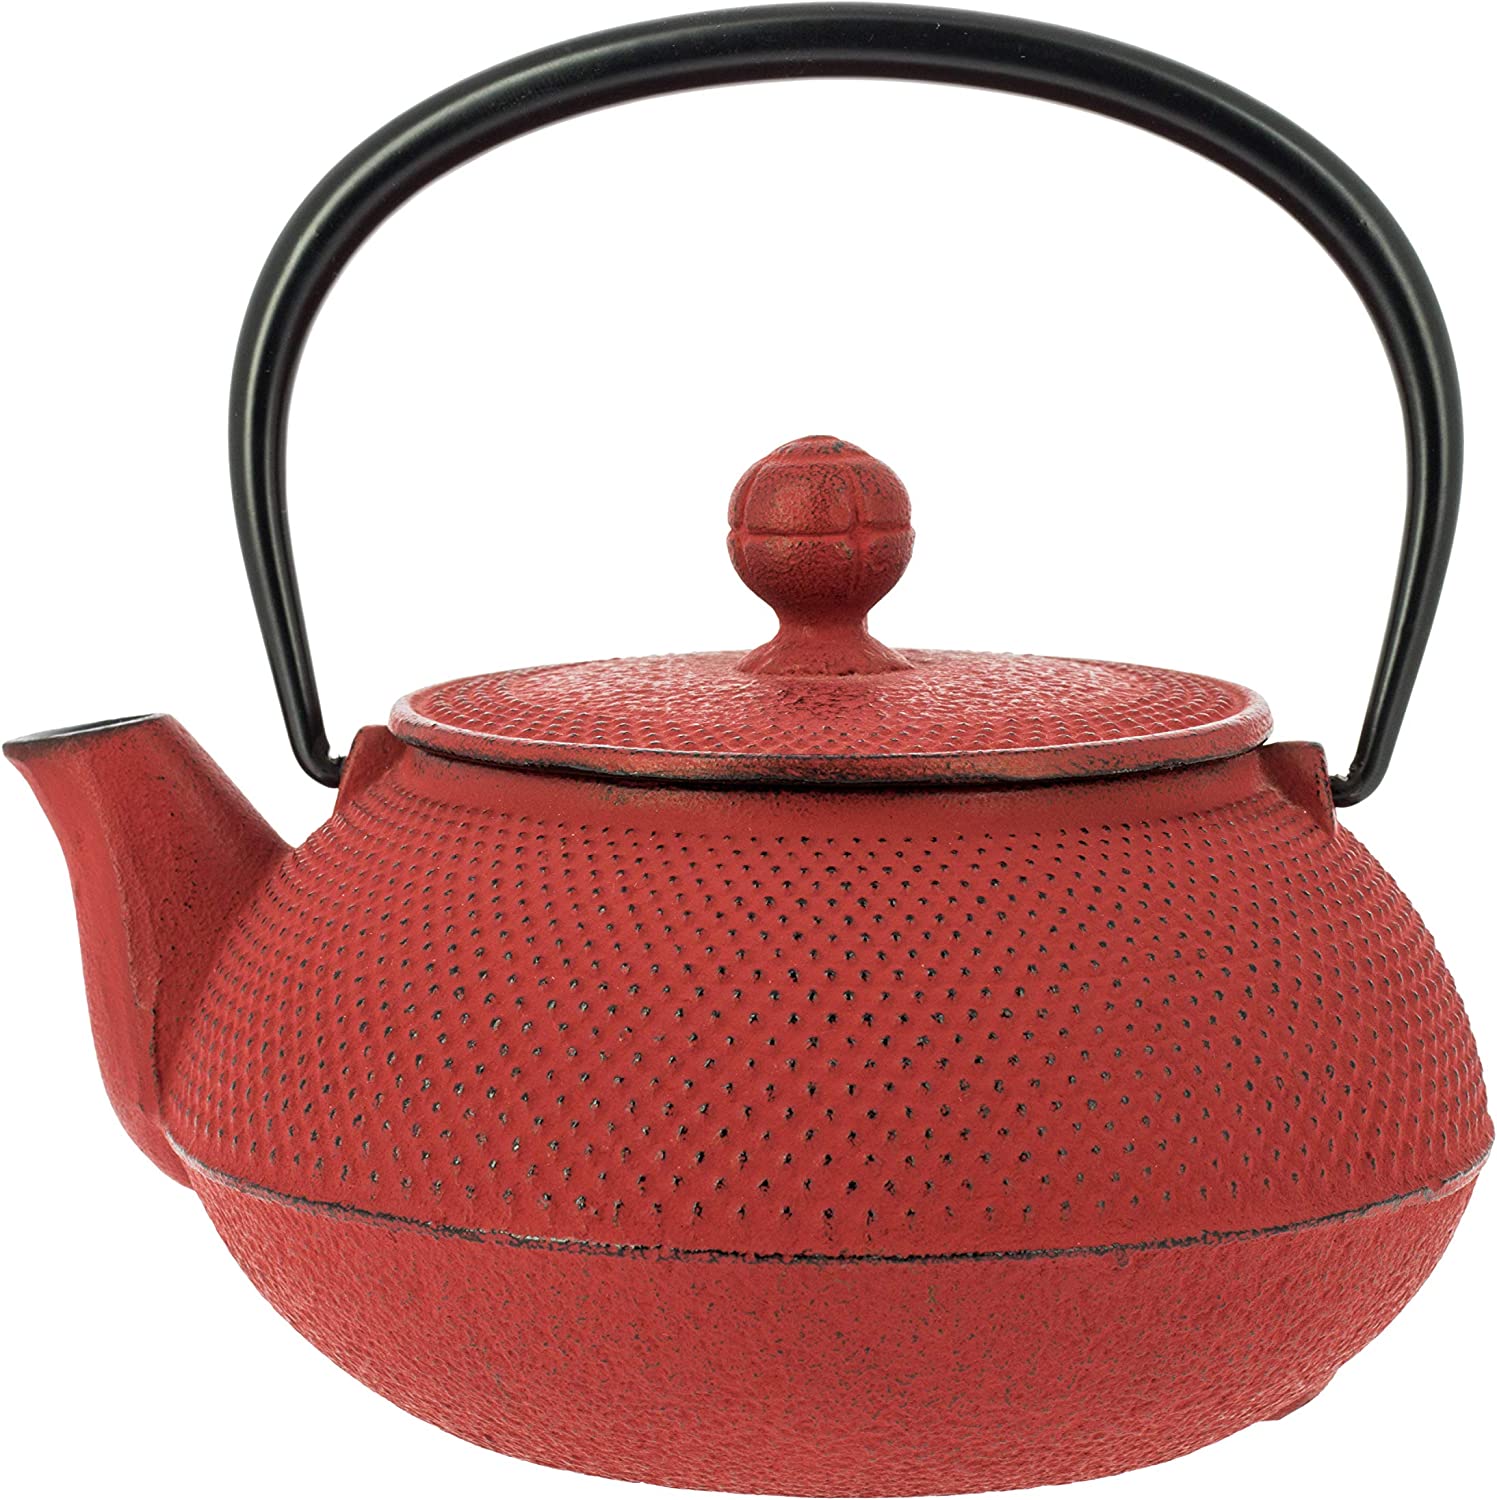 Iwachu Cast Iron Teapot Red